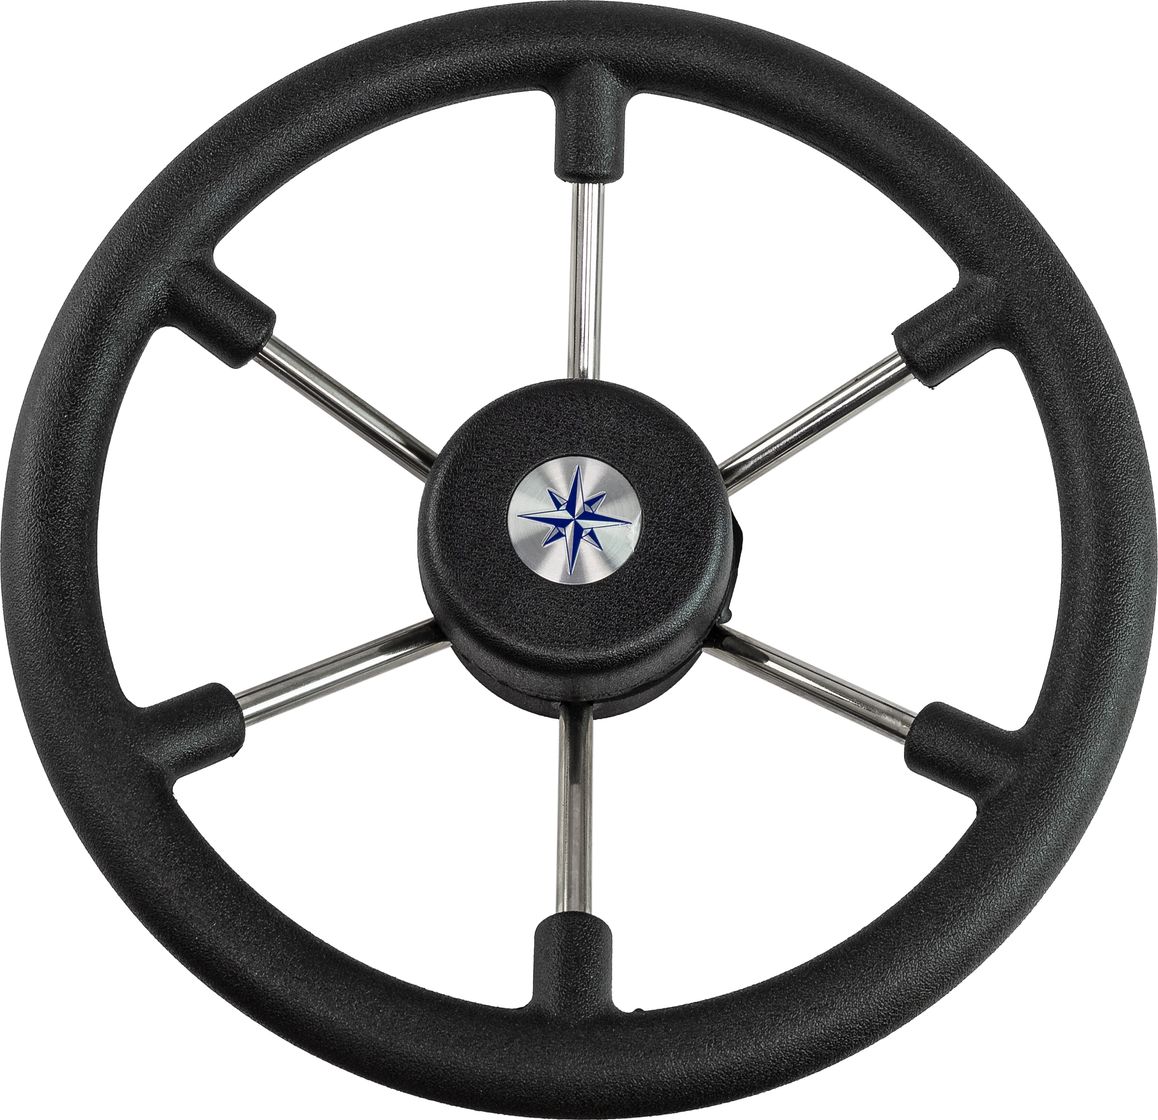 Рулевое колесо LEADER TANEGUM черный обод серебряные спицы д. 330 мм VN7330-01 рулевое колесо leader plast обод серебряные спицы д 360 мм vn8360 01